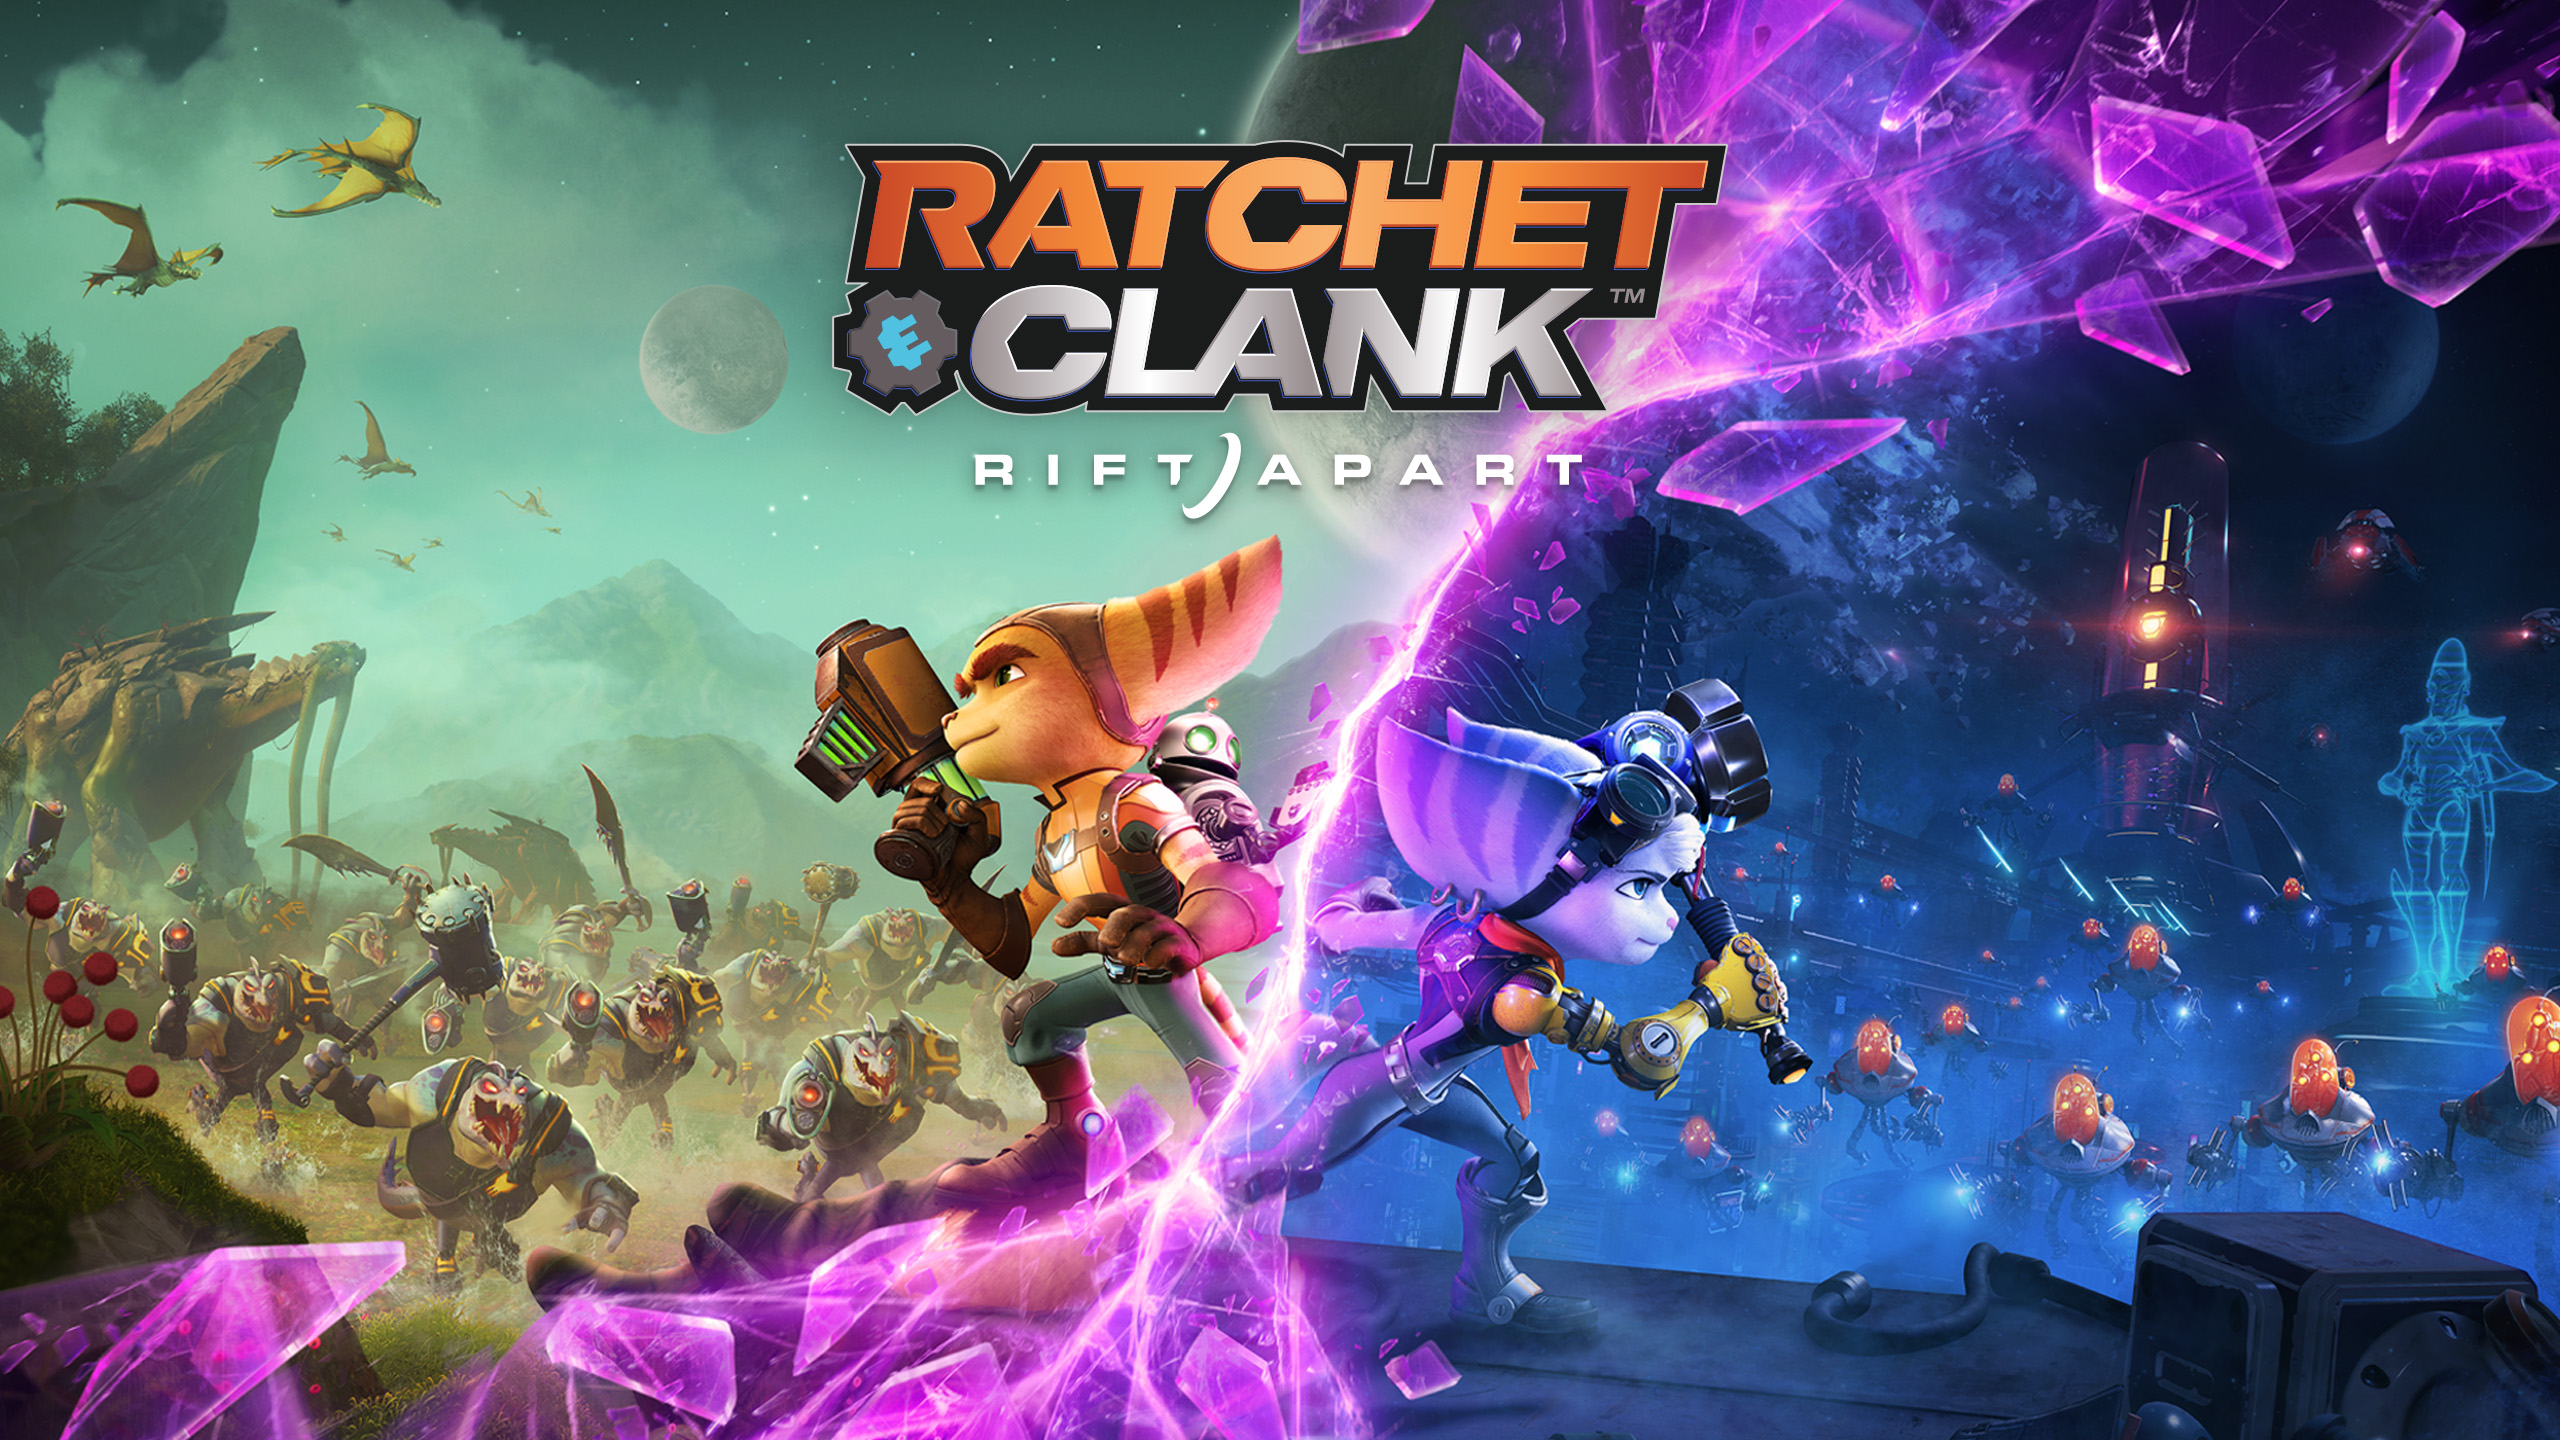 Ratchet & Clank: Rift Apart ИГРОМУЛЬФИЛЬМ ►#9 Прохождение без комментариев (Русская озвучка)